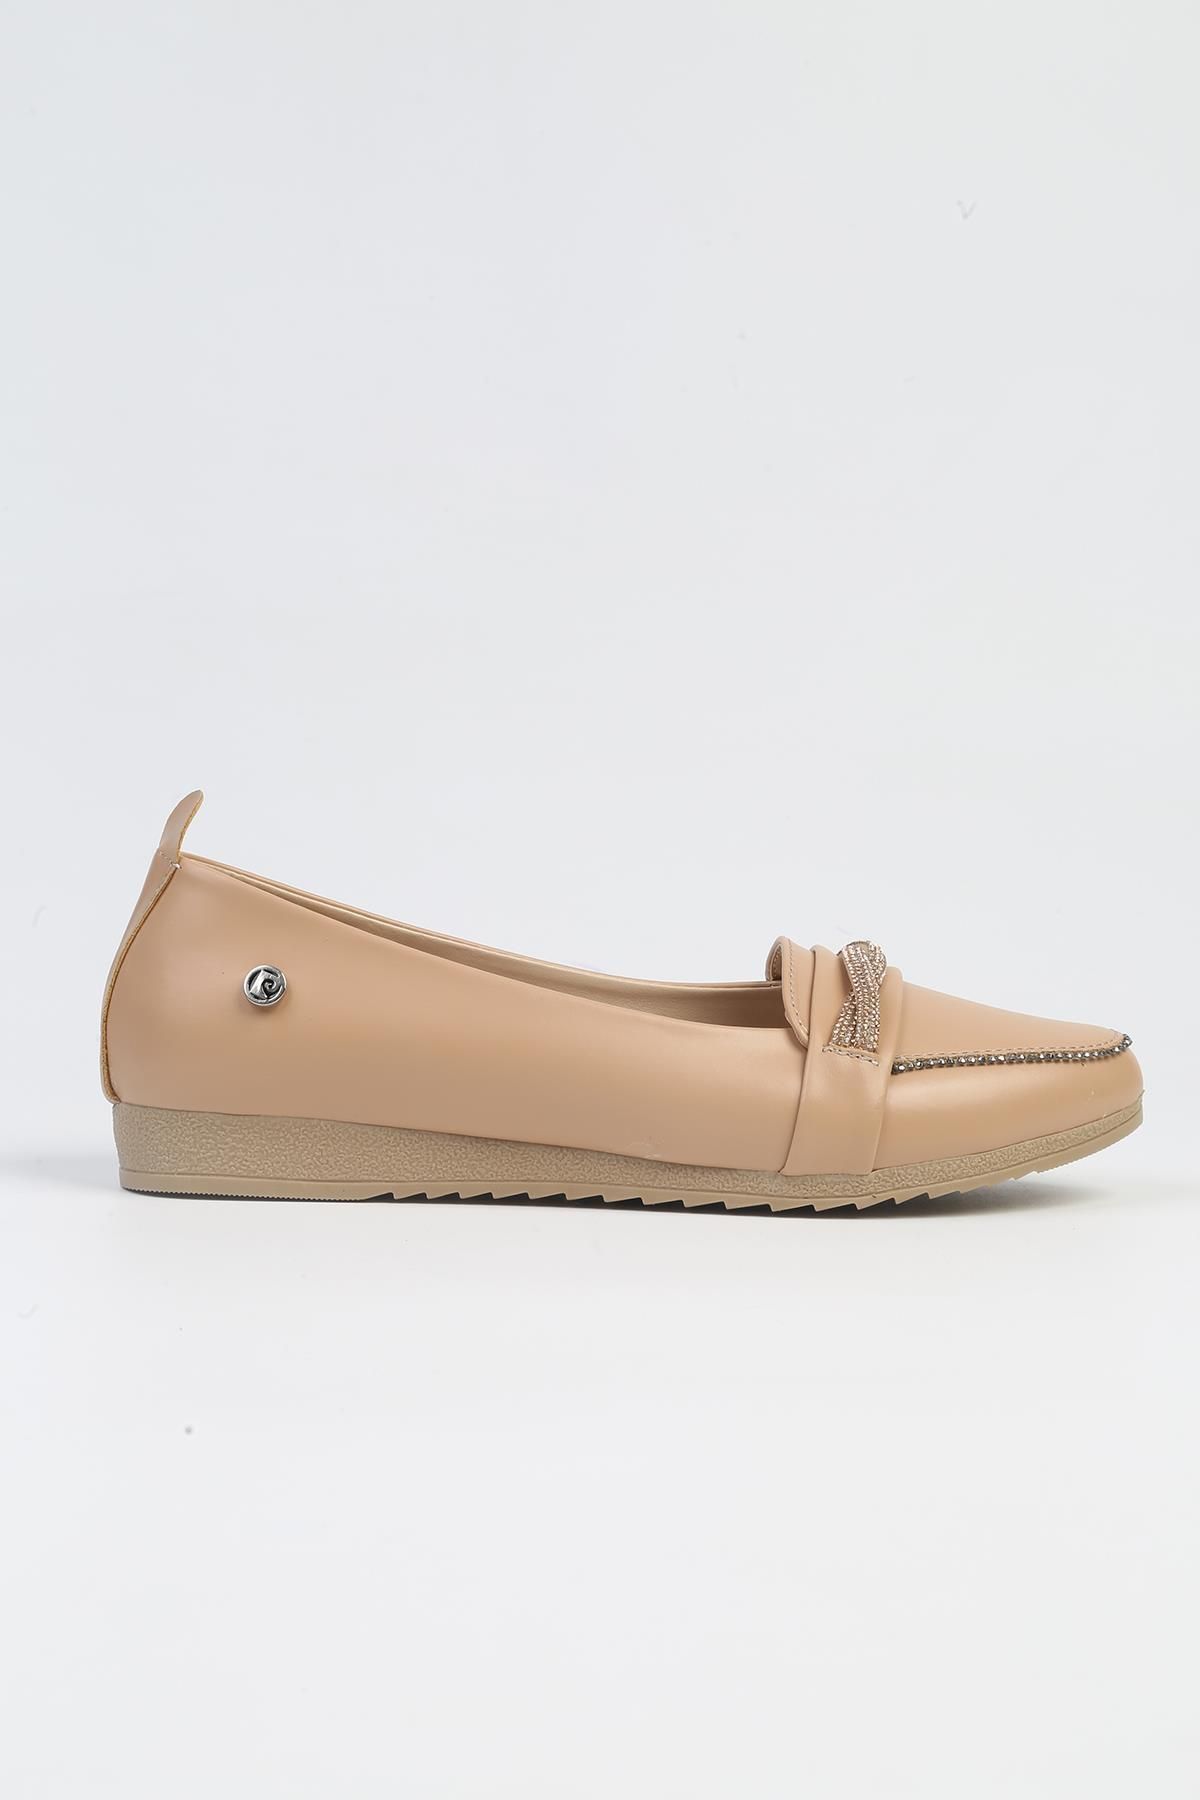 Pierre Cardin ® | PC-53017- 3962 Krem-Kadın Günlük Ayakkabı